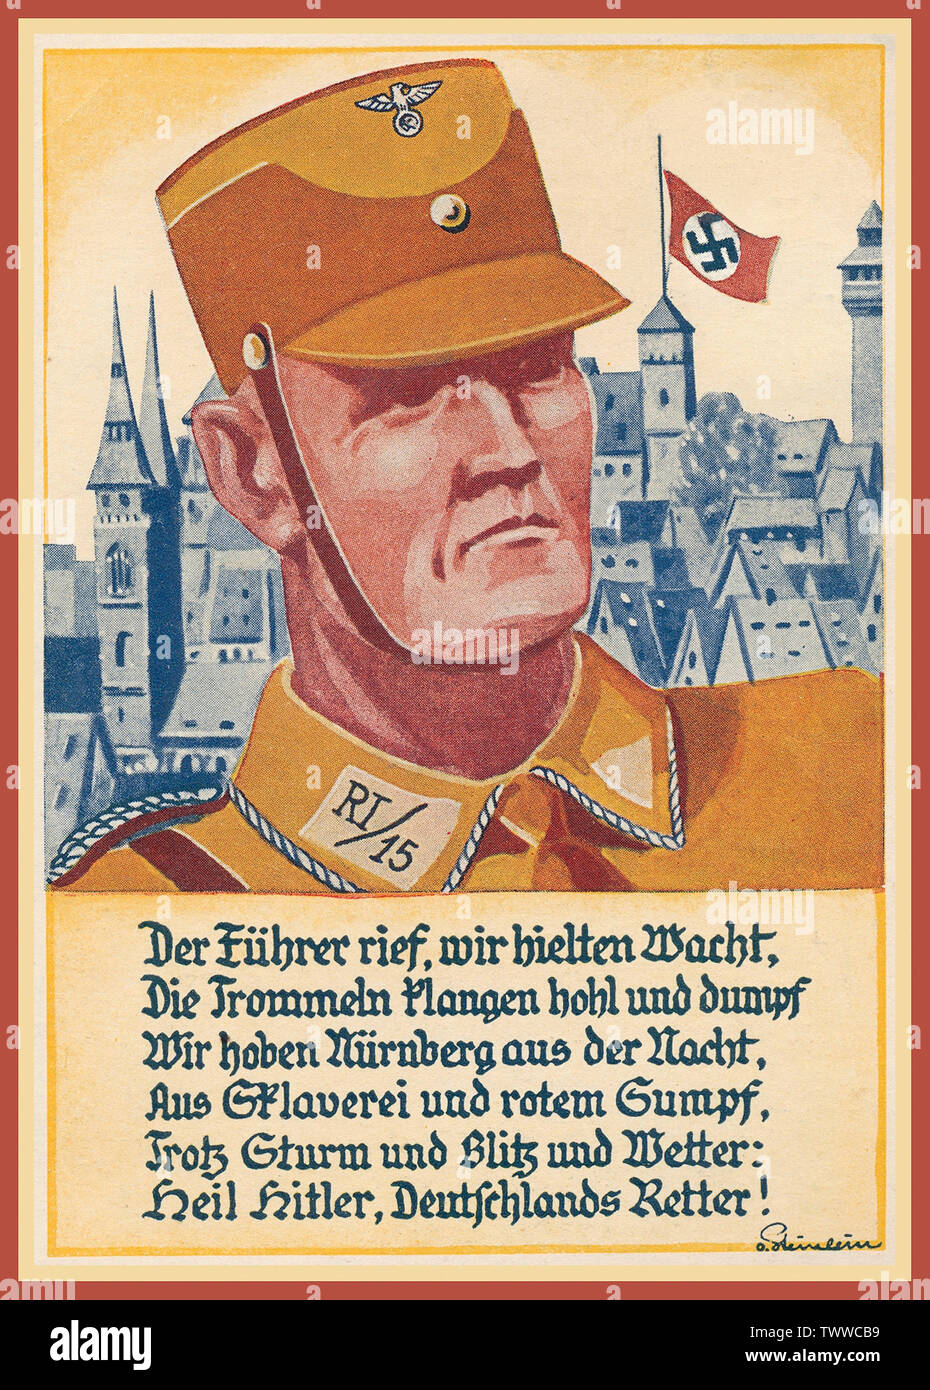 Affiche de propagande nazie Vintage Postcard 1933, '1933' jour parti Nazi Swastika Nuremberg flag flying 'Reich Partie Rally 1933' 'Kopfbild SA-Mann" et dire "le Führer a appelé, nous avons continué à regarder ...'. 'Nuremberg 2.9.33'. 'Heil Hitler Allemagnes Sauveur' Banque D'Images